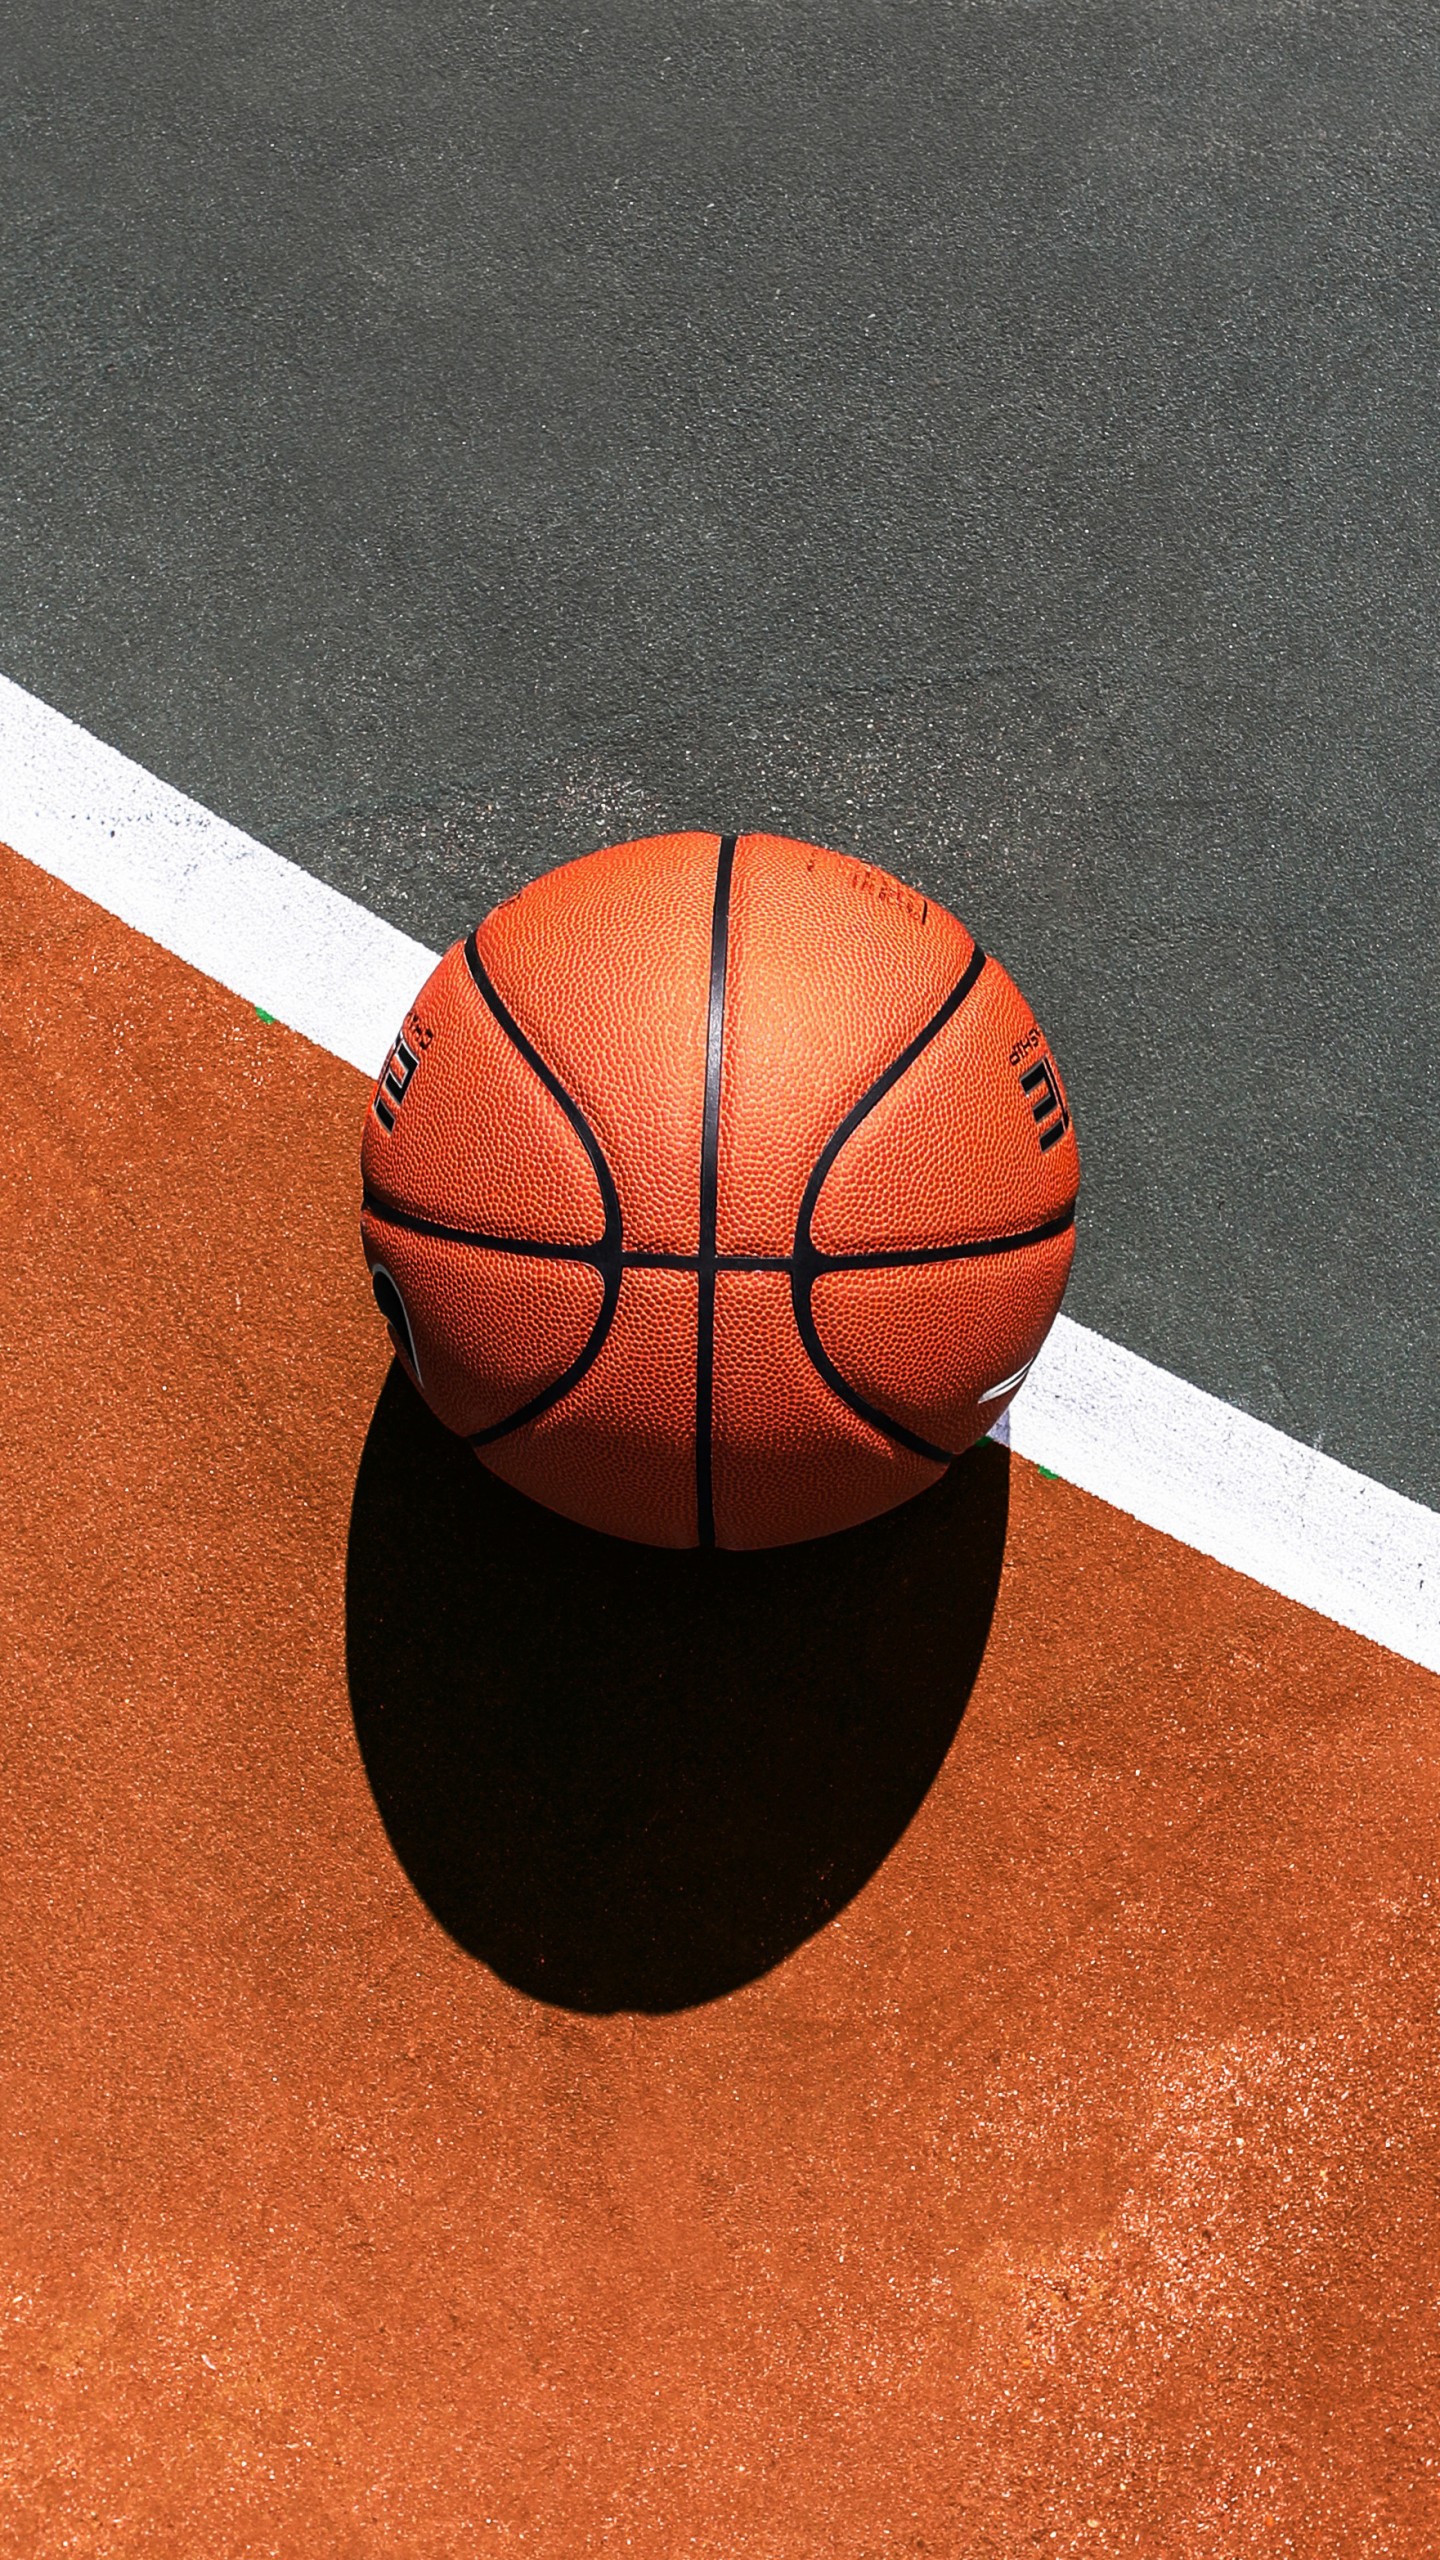 دانلود پاور پوینت آماده برای آشنایی با ورزش بسکتبال